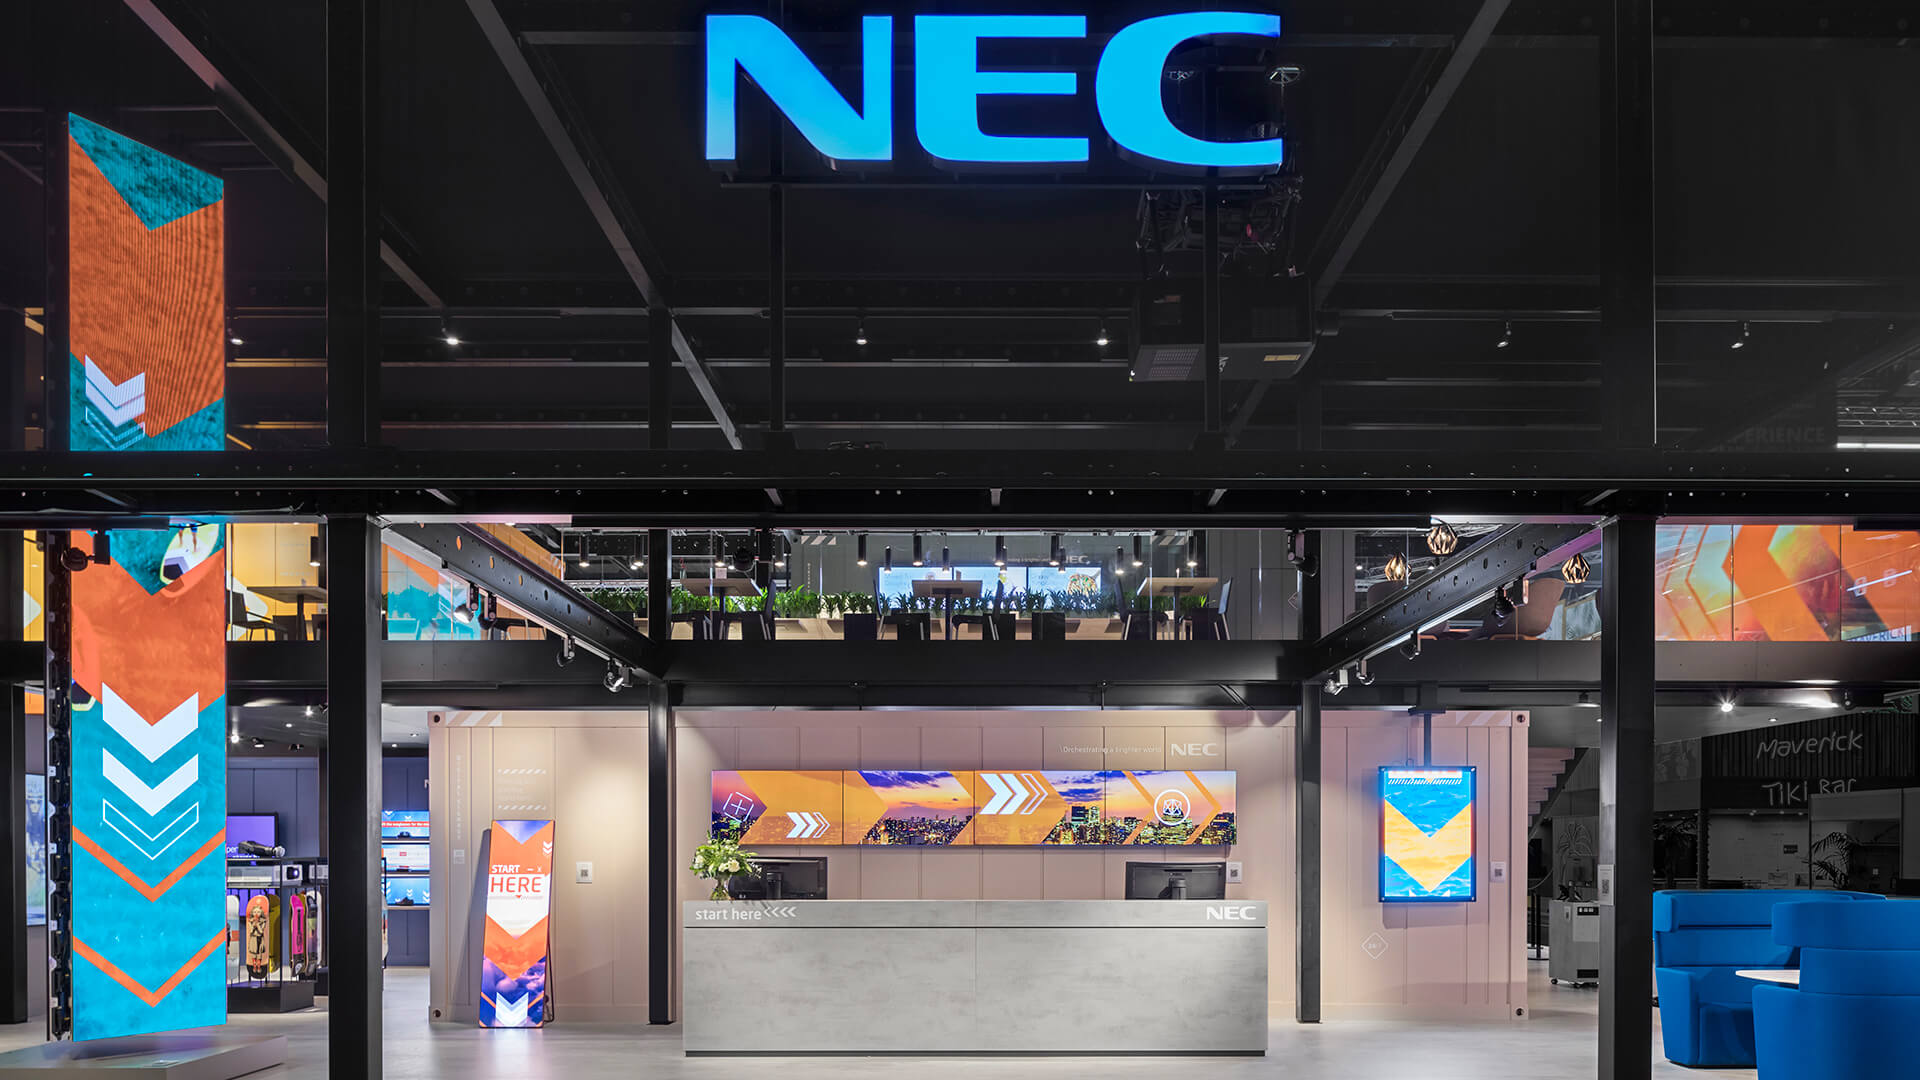 NEC là thương hiệu sản xuất thiết bị hình ảnh, máy tính hàng đầu tại Nhật Bản